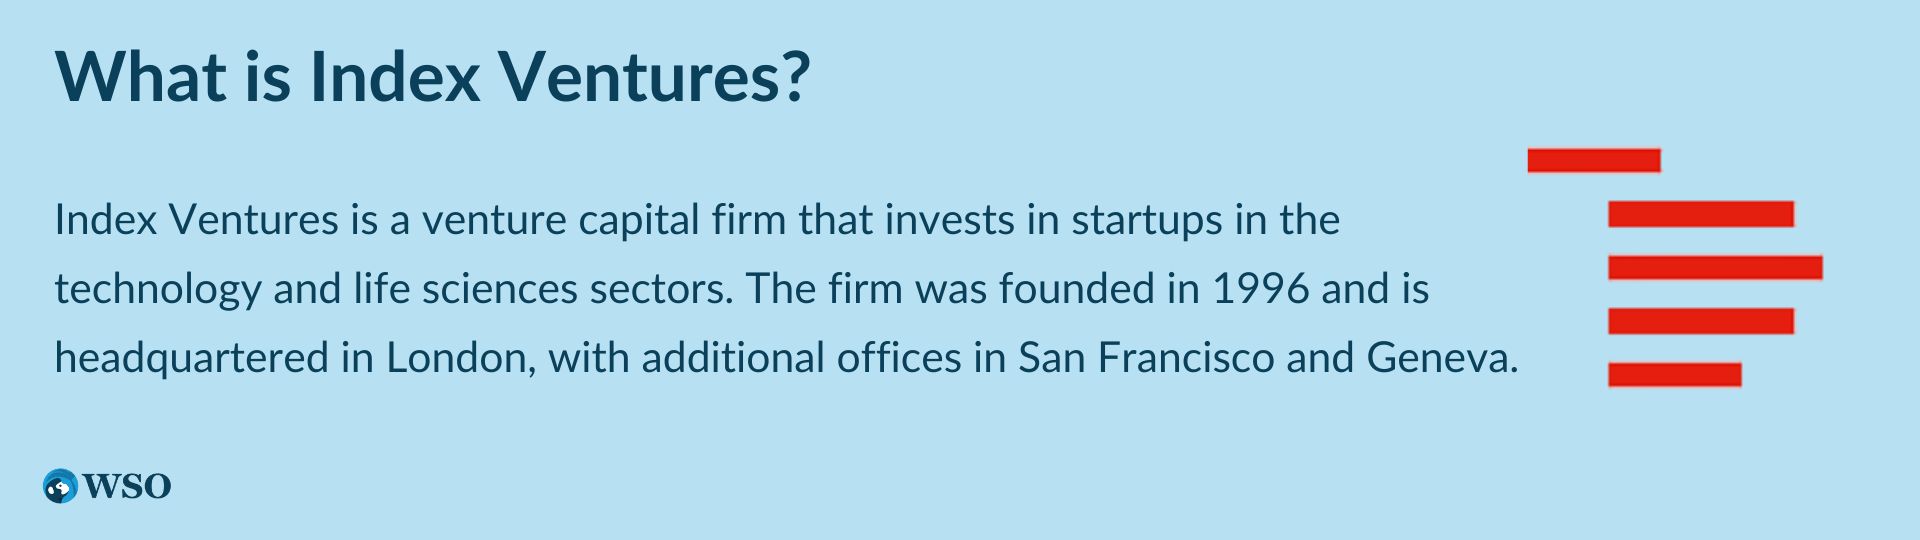 What is Index Ventures?